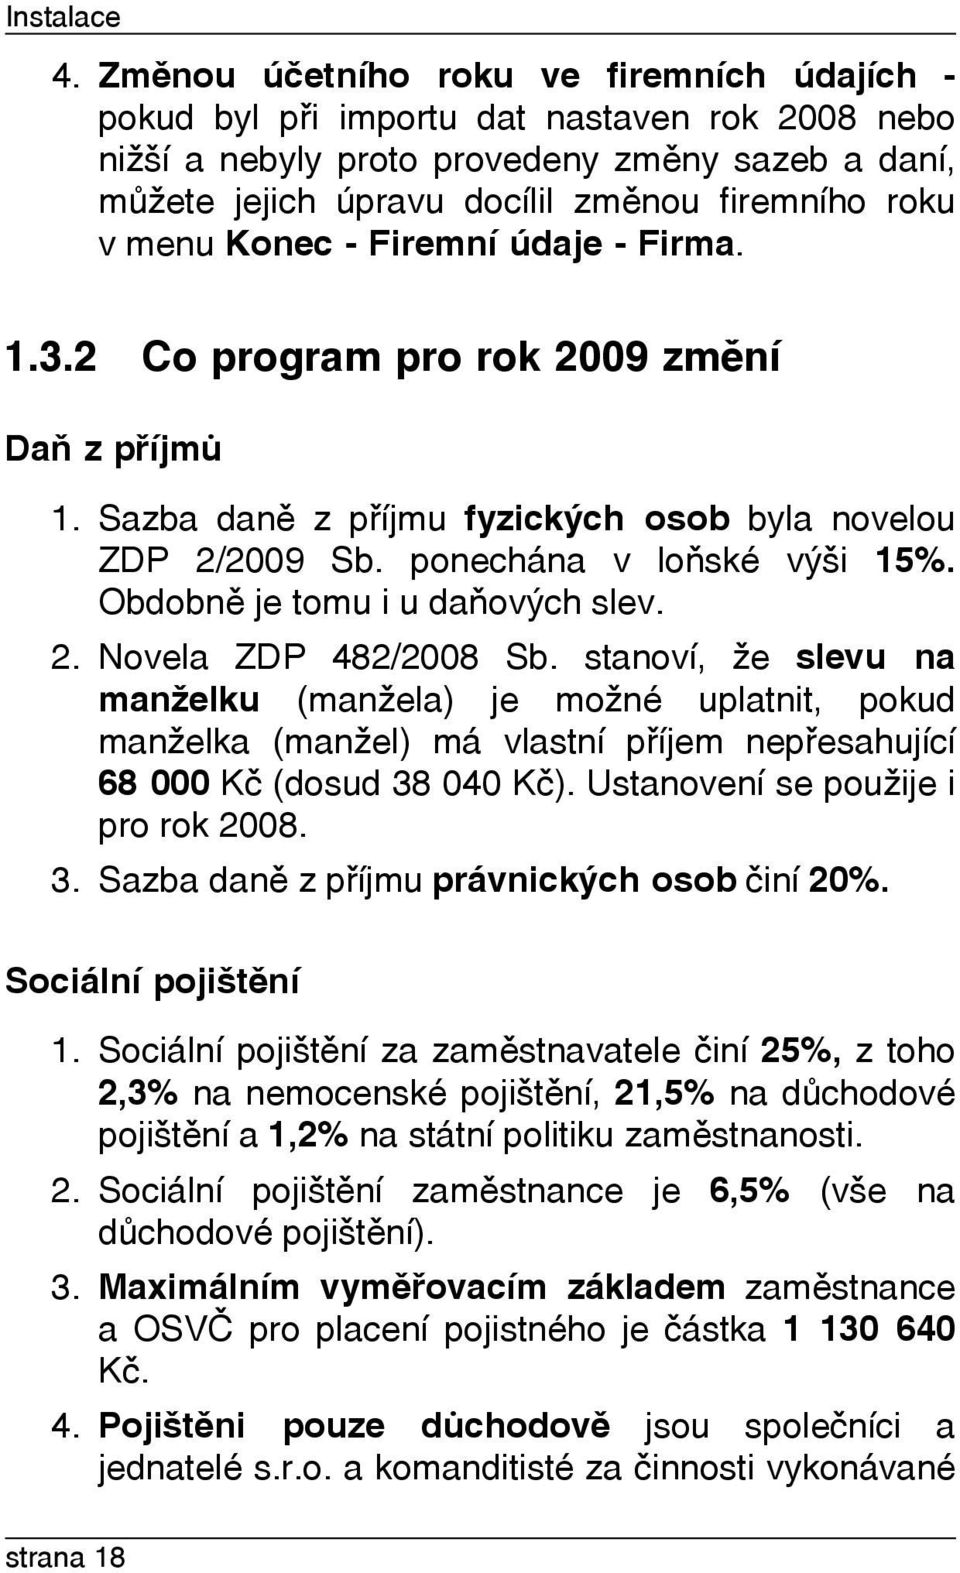 menu Konec - Firemní údaje - Firma. 1.3.2 Co program pro rok 2009 zmìní Daò z pøíjmù 1. Sazba danì z pøíjmu fyzických osob byla novelou ZDP 2/2009 Sb. ponechána v loòské výši 15%.